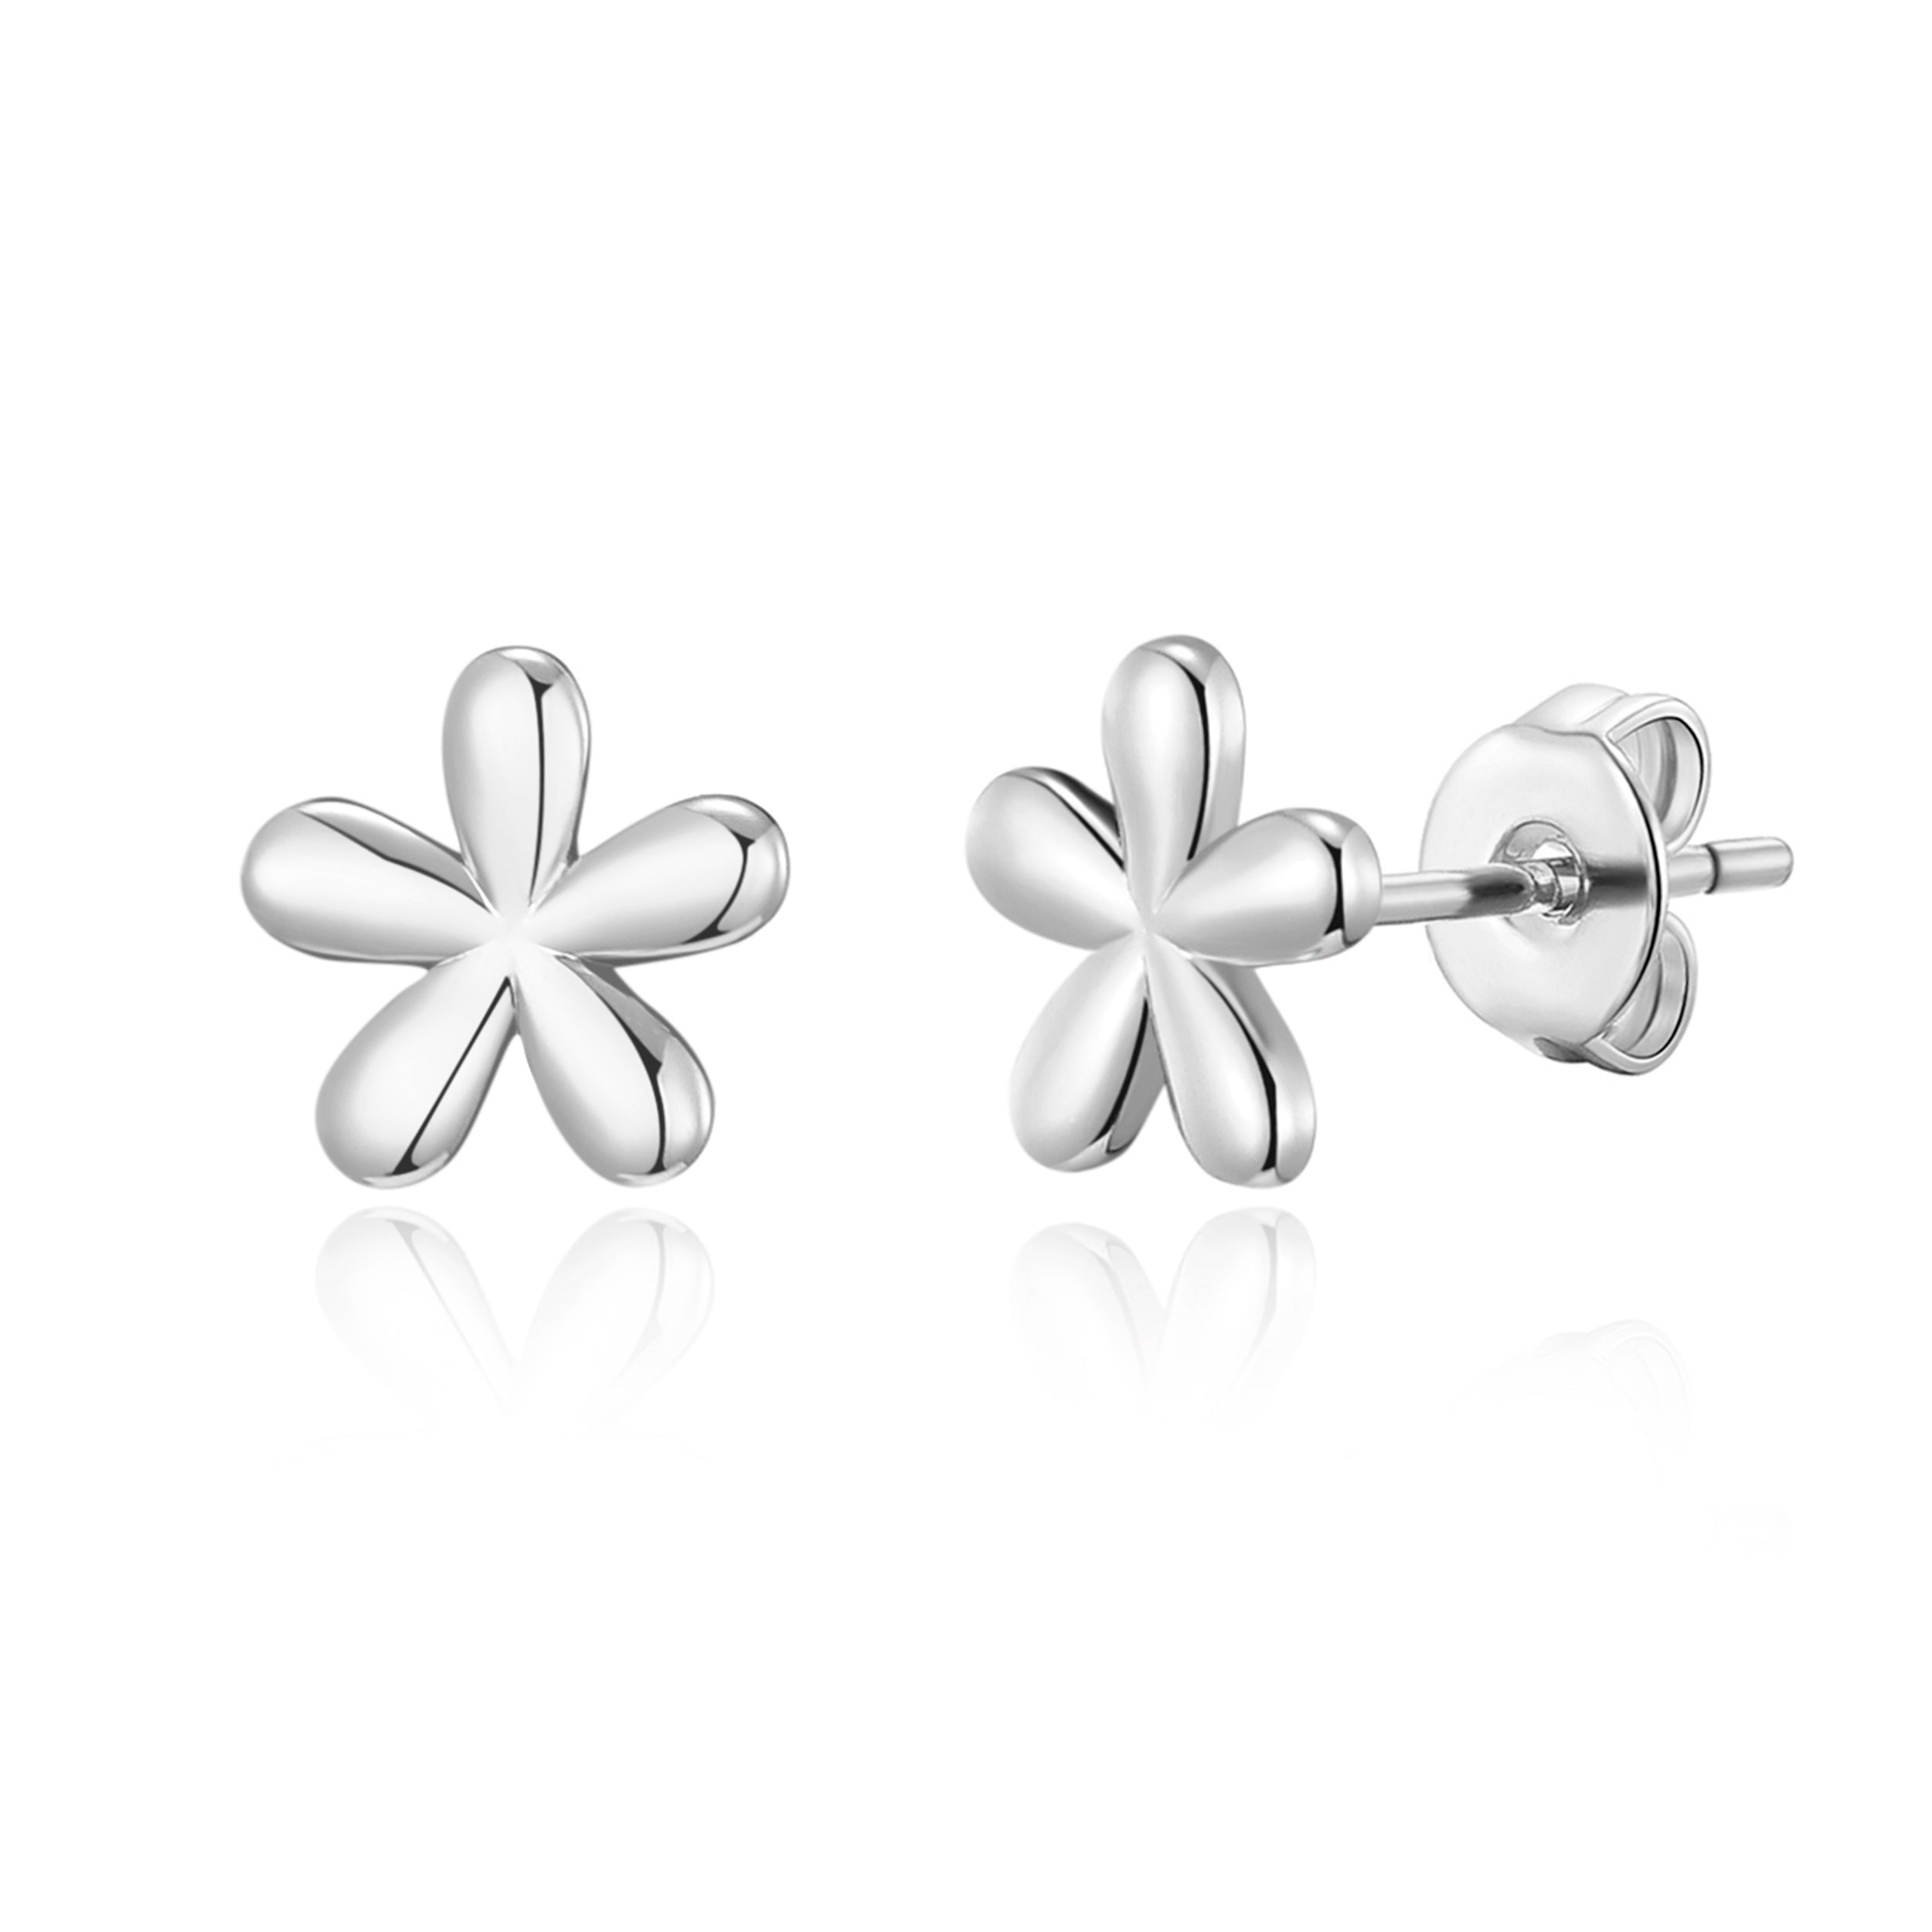 Silver Plated Flower Stud Earrings by Philip Jones Jewellery